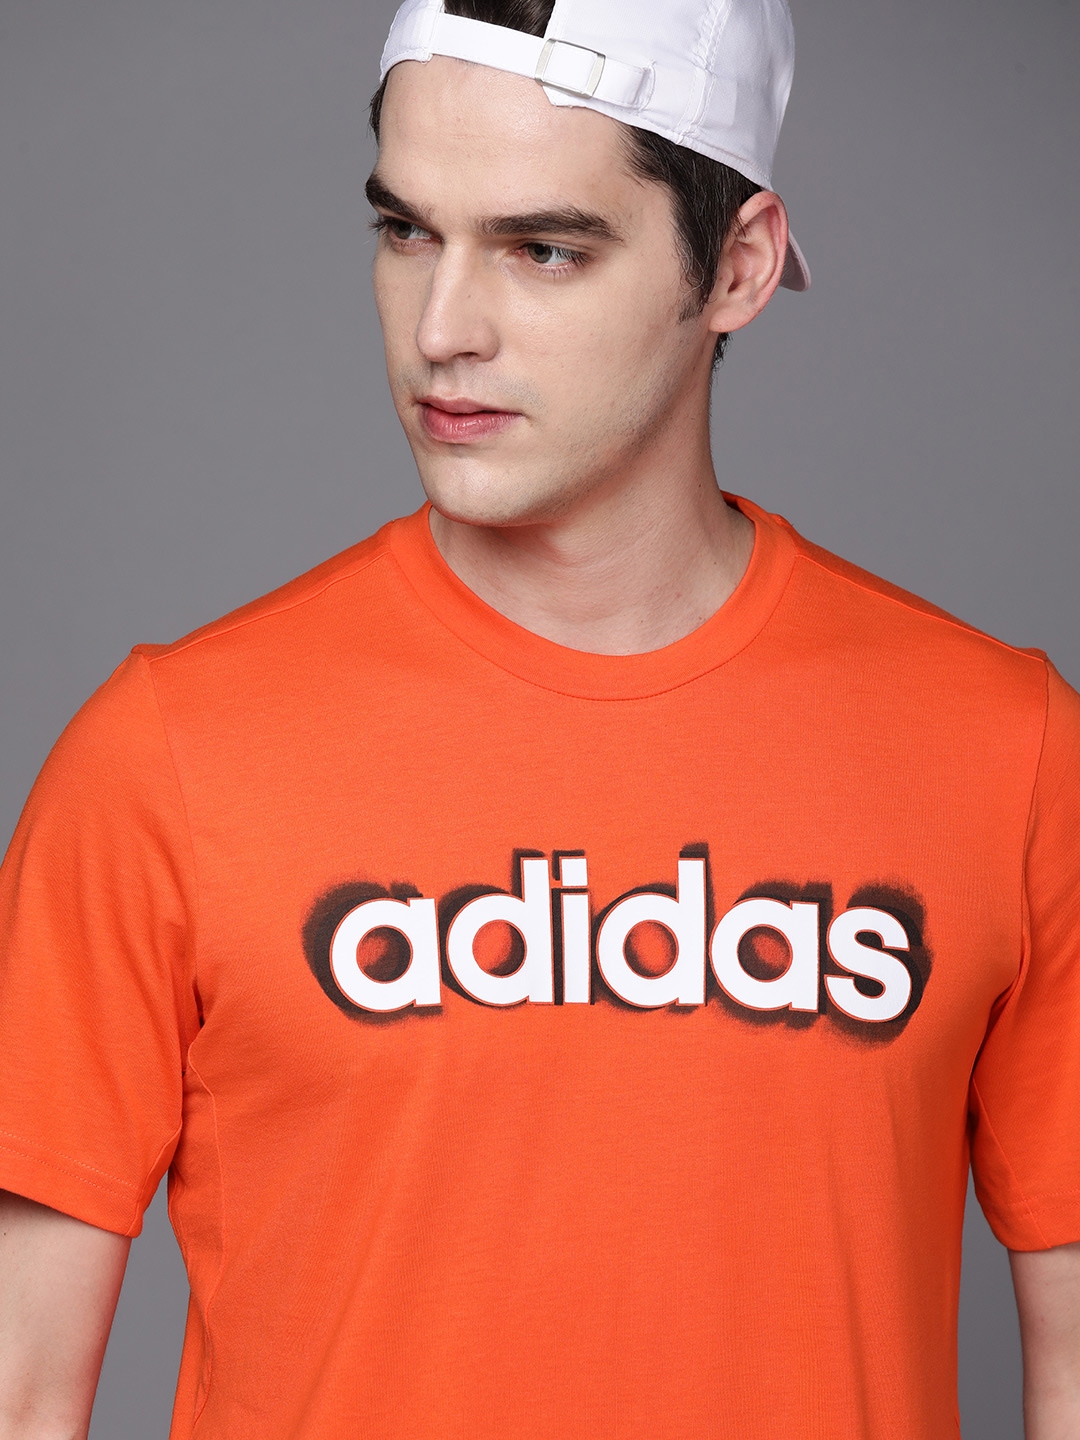 Buy ADIDAS Men Orange & White Brand Logo Printed Training T Shirt ...